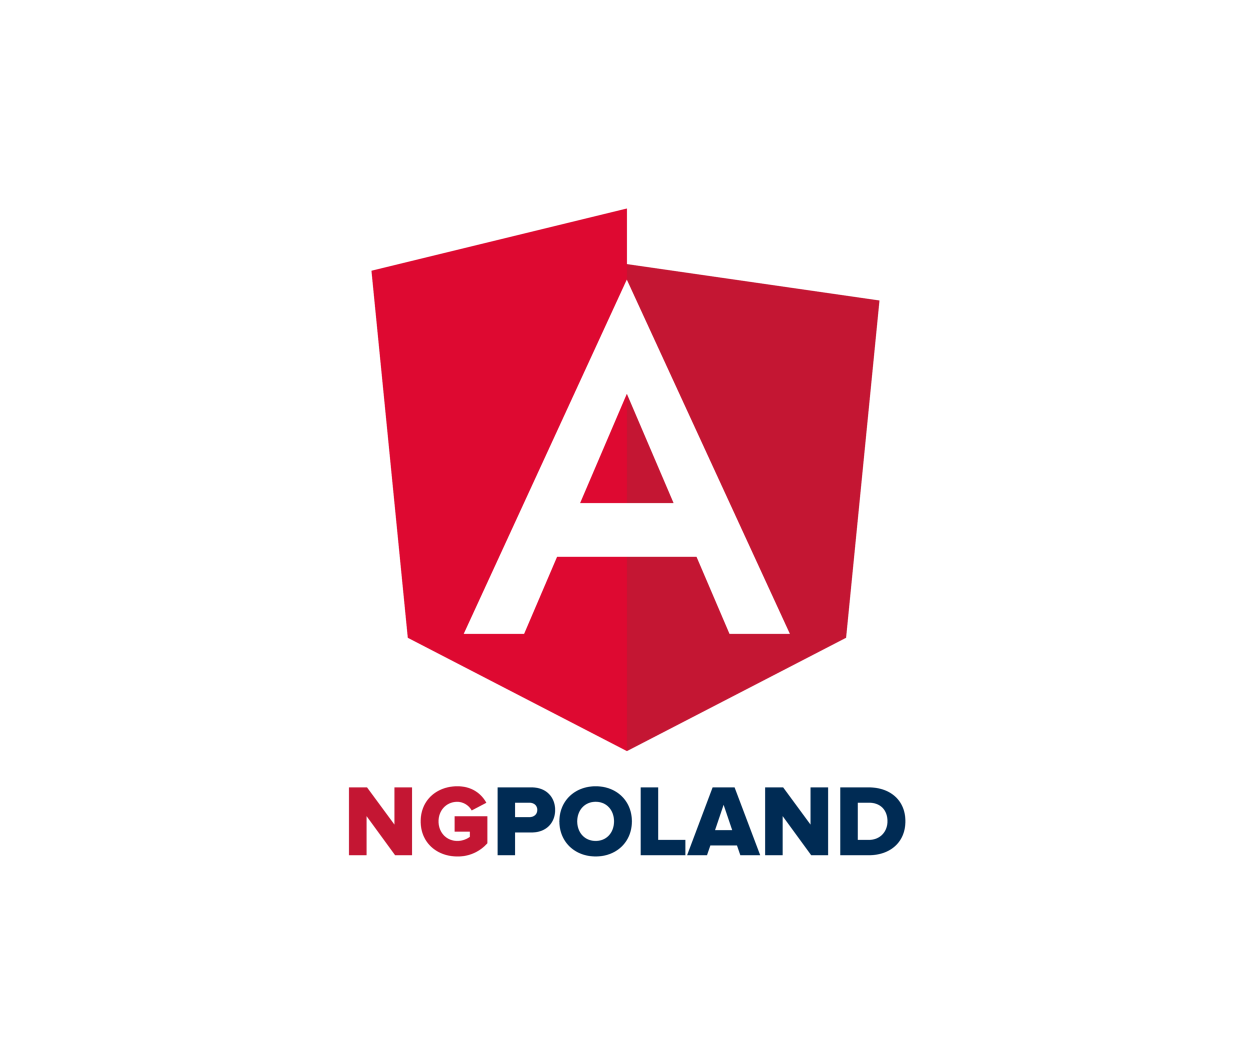 NG Poland Conference